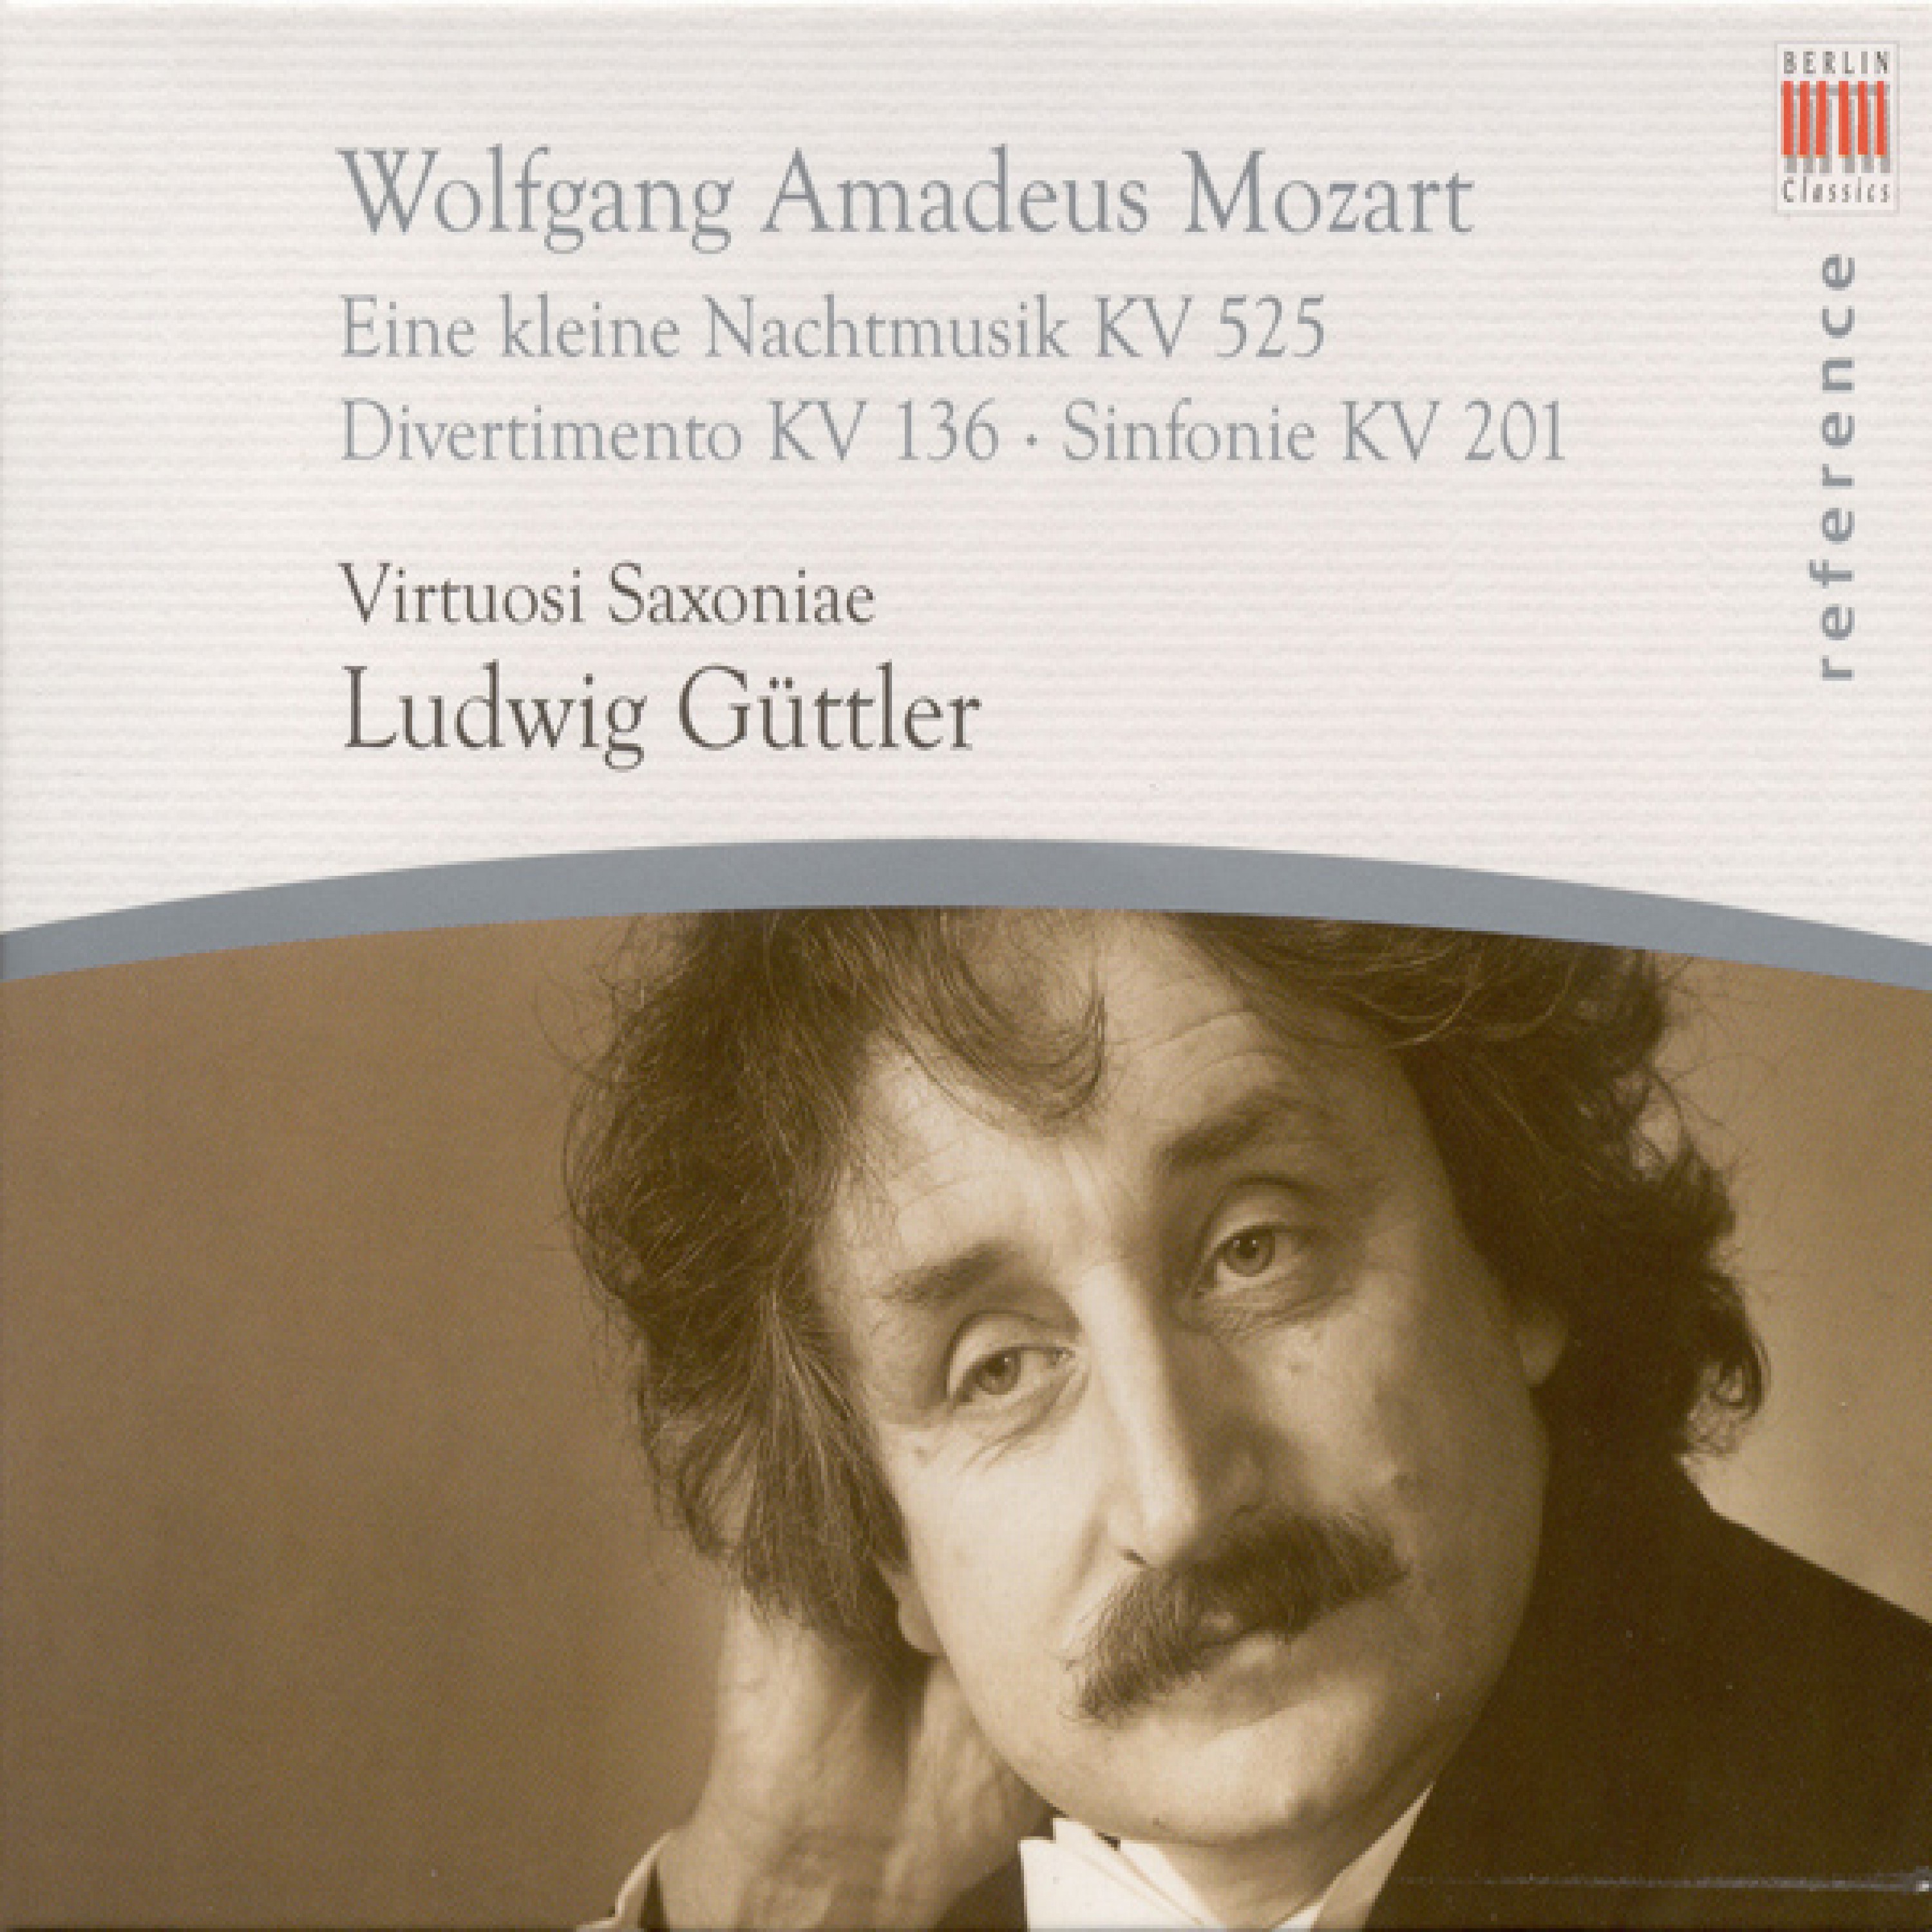 Serenade No. 13 in G Major, K. 525 "Eine kleine Nachtmusik": IV. Rondo. Allegro